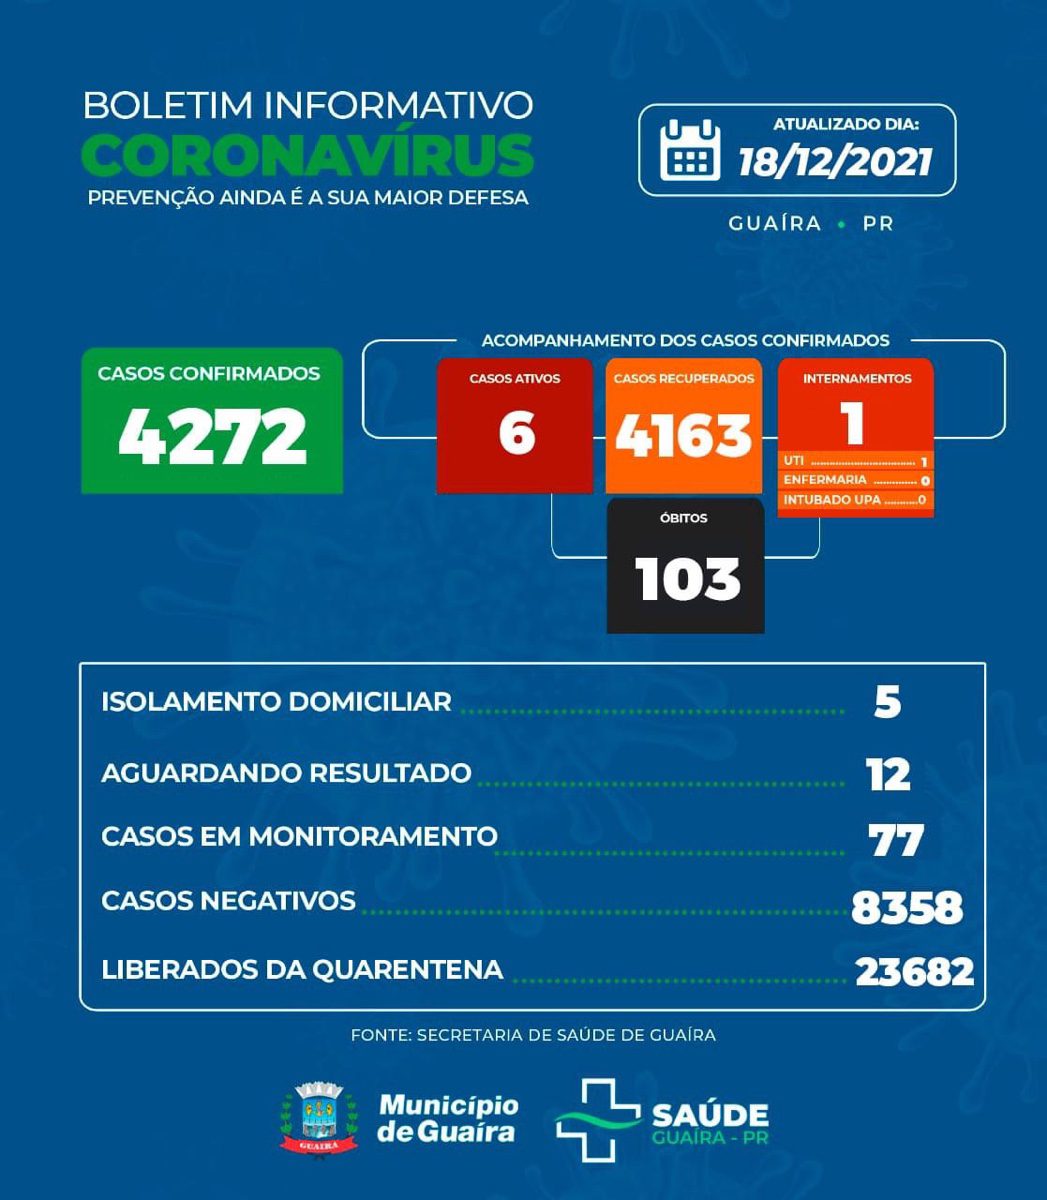 Guaíra - Saúde informa 6 casos ativos e 4163 recuperados da Covid-19 • Portal Guaíra